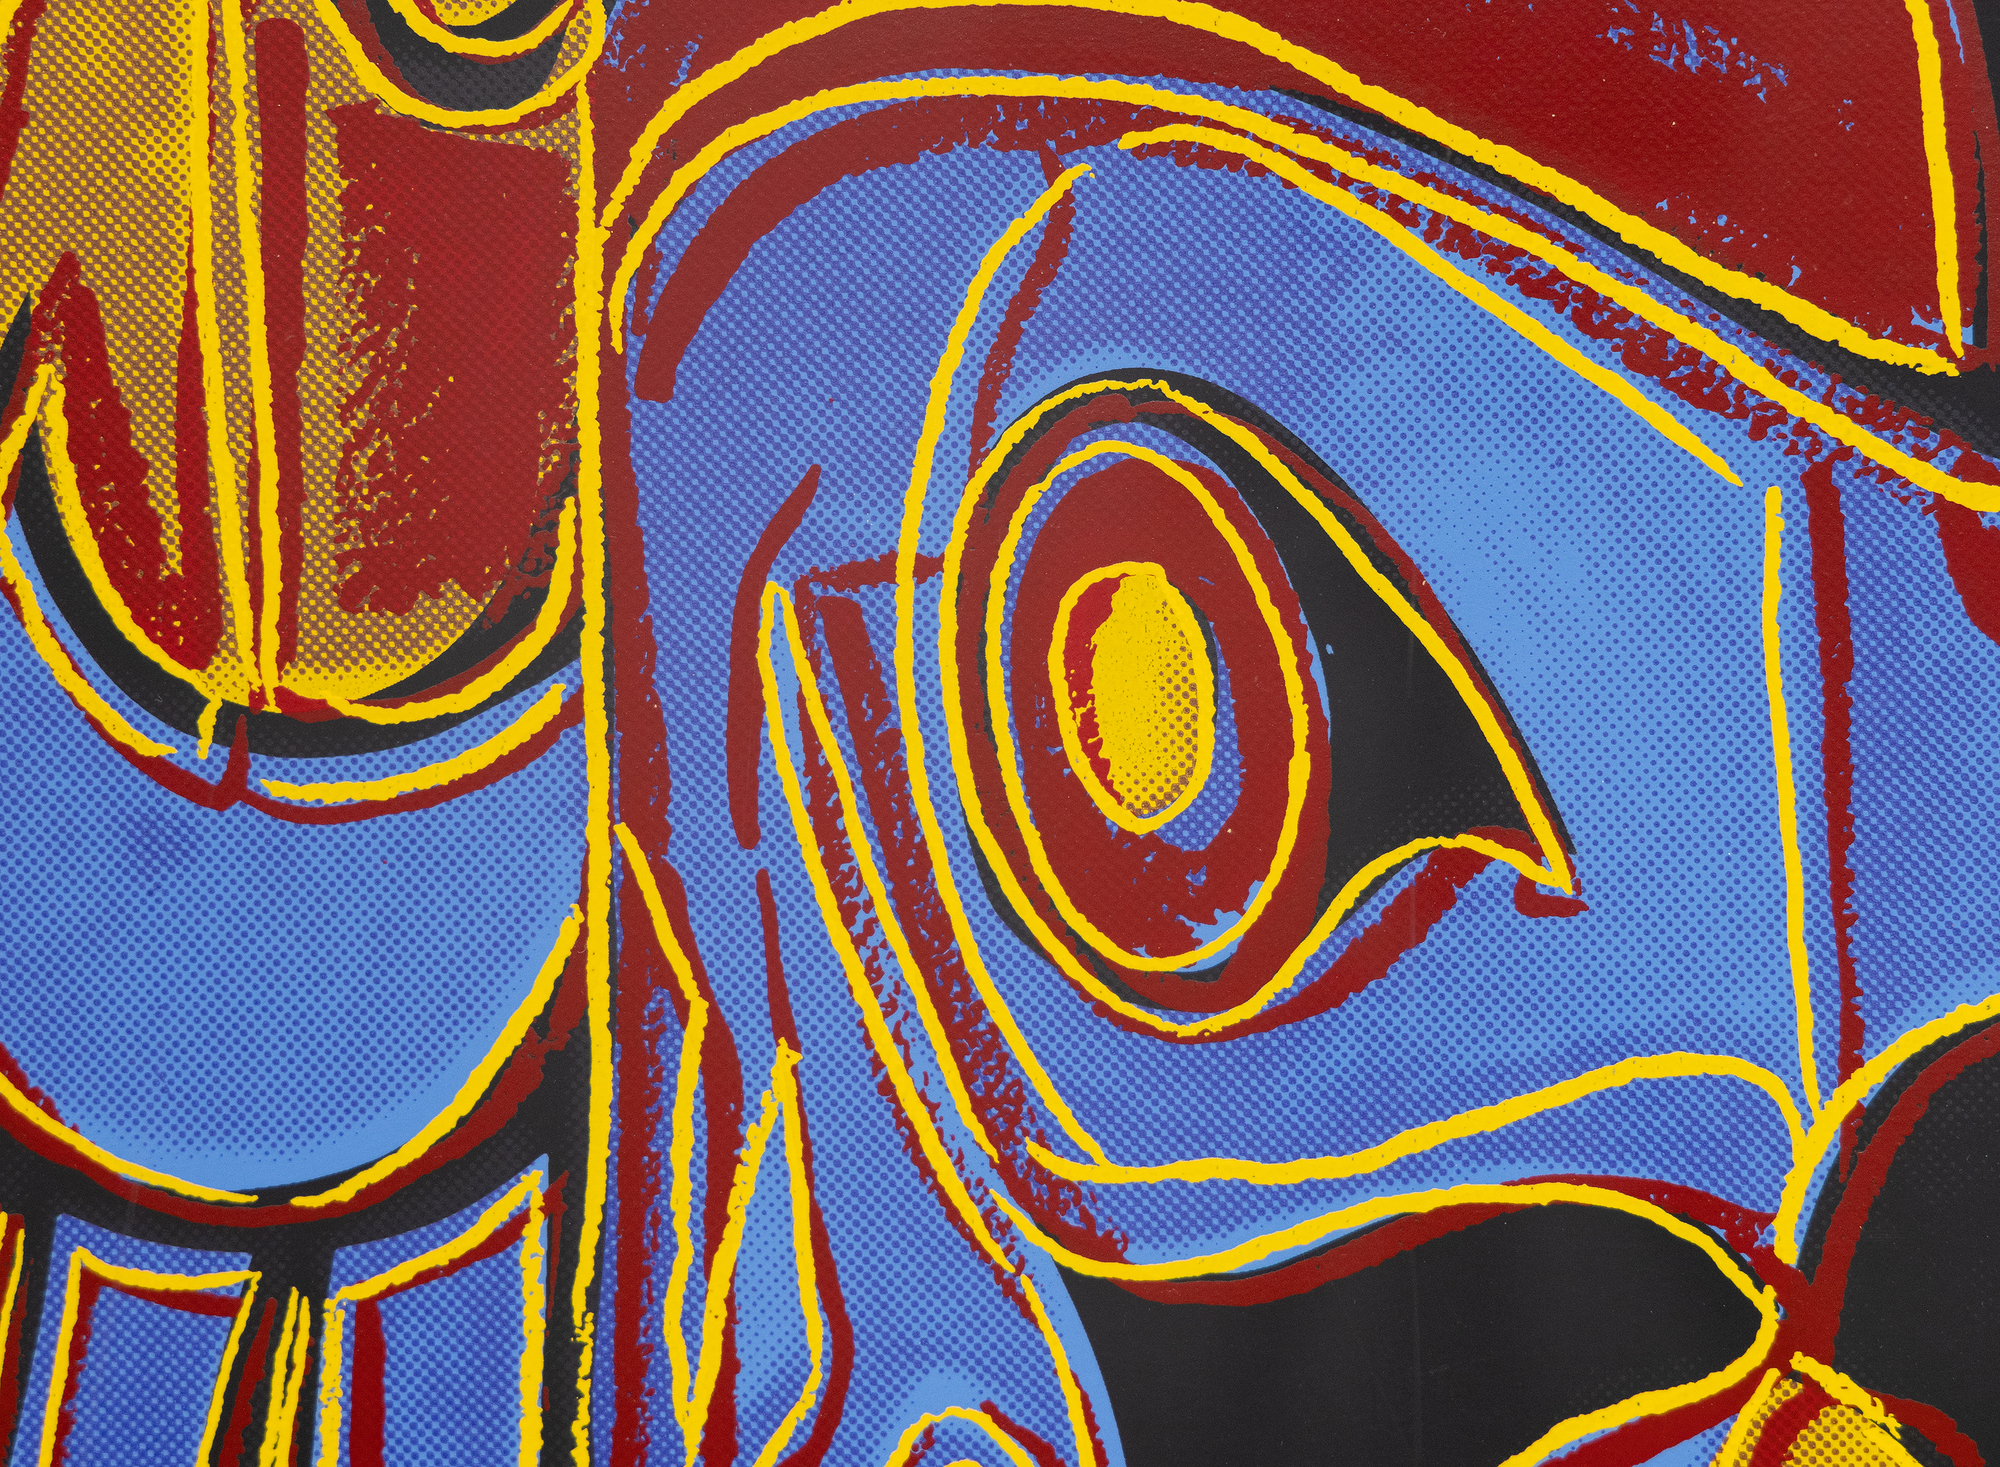 אנדי וורהול - מסכת החוף הצפון מערבי - טביעת מסך בצבעים על לוח מוזיאון לנוקס - 38 x 38 in.